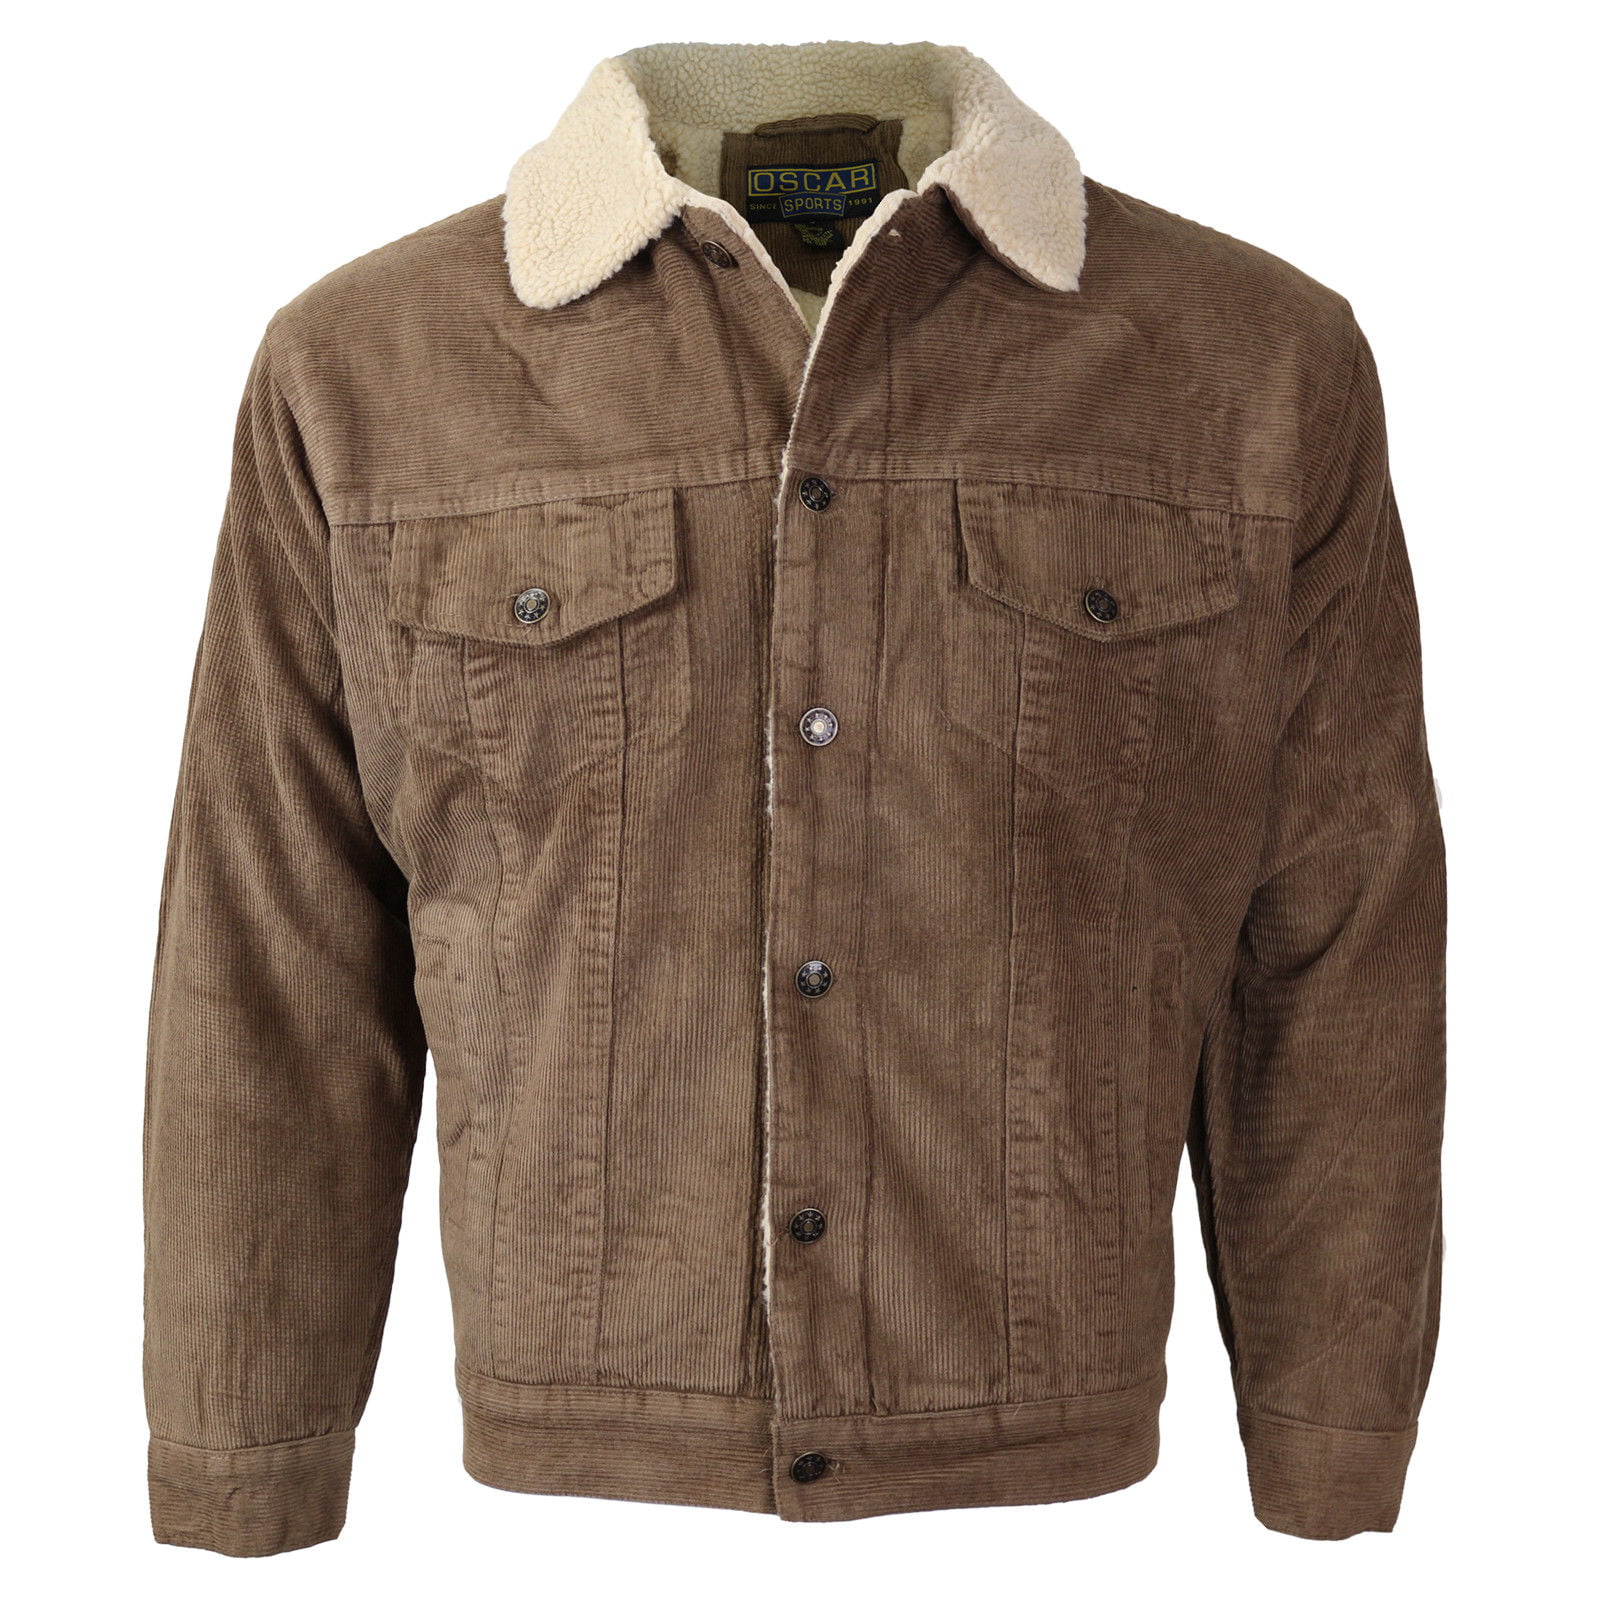 brown corduroy sherpa jacket mens